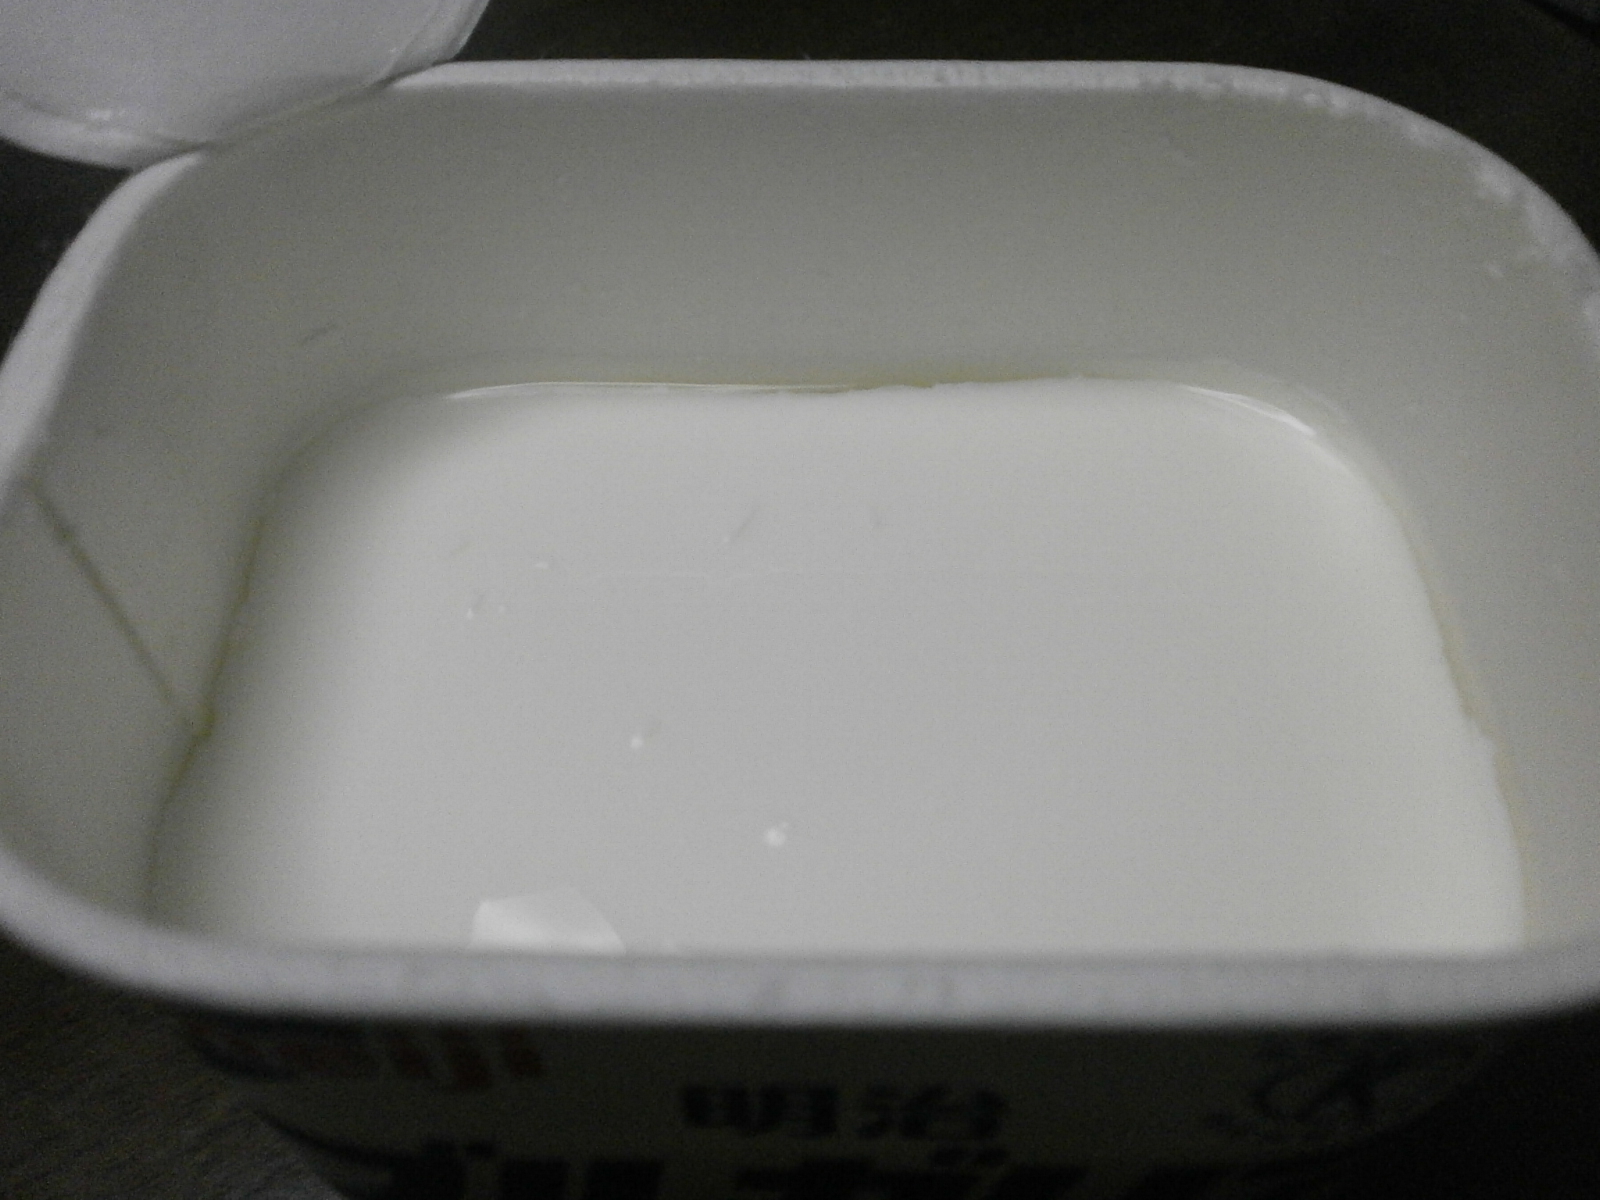 Yogurt bulgaro (Meiji)